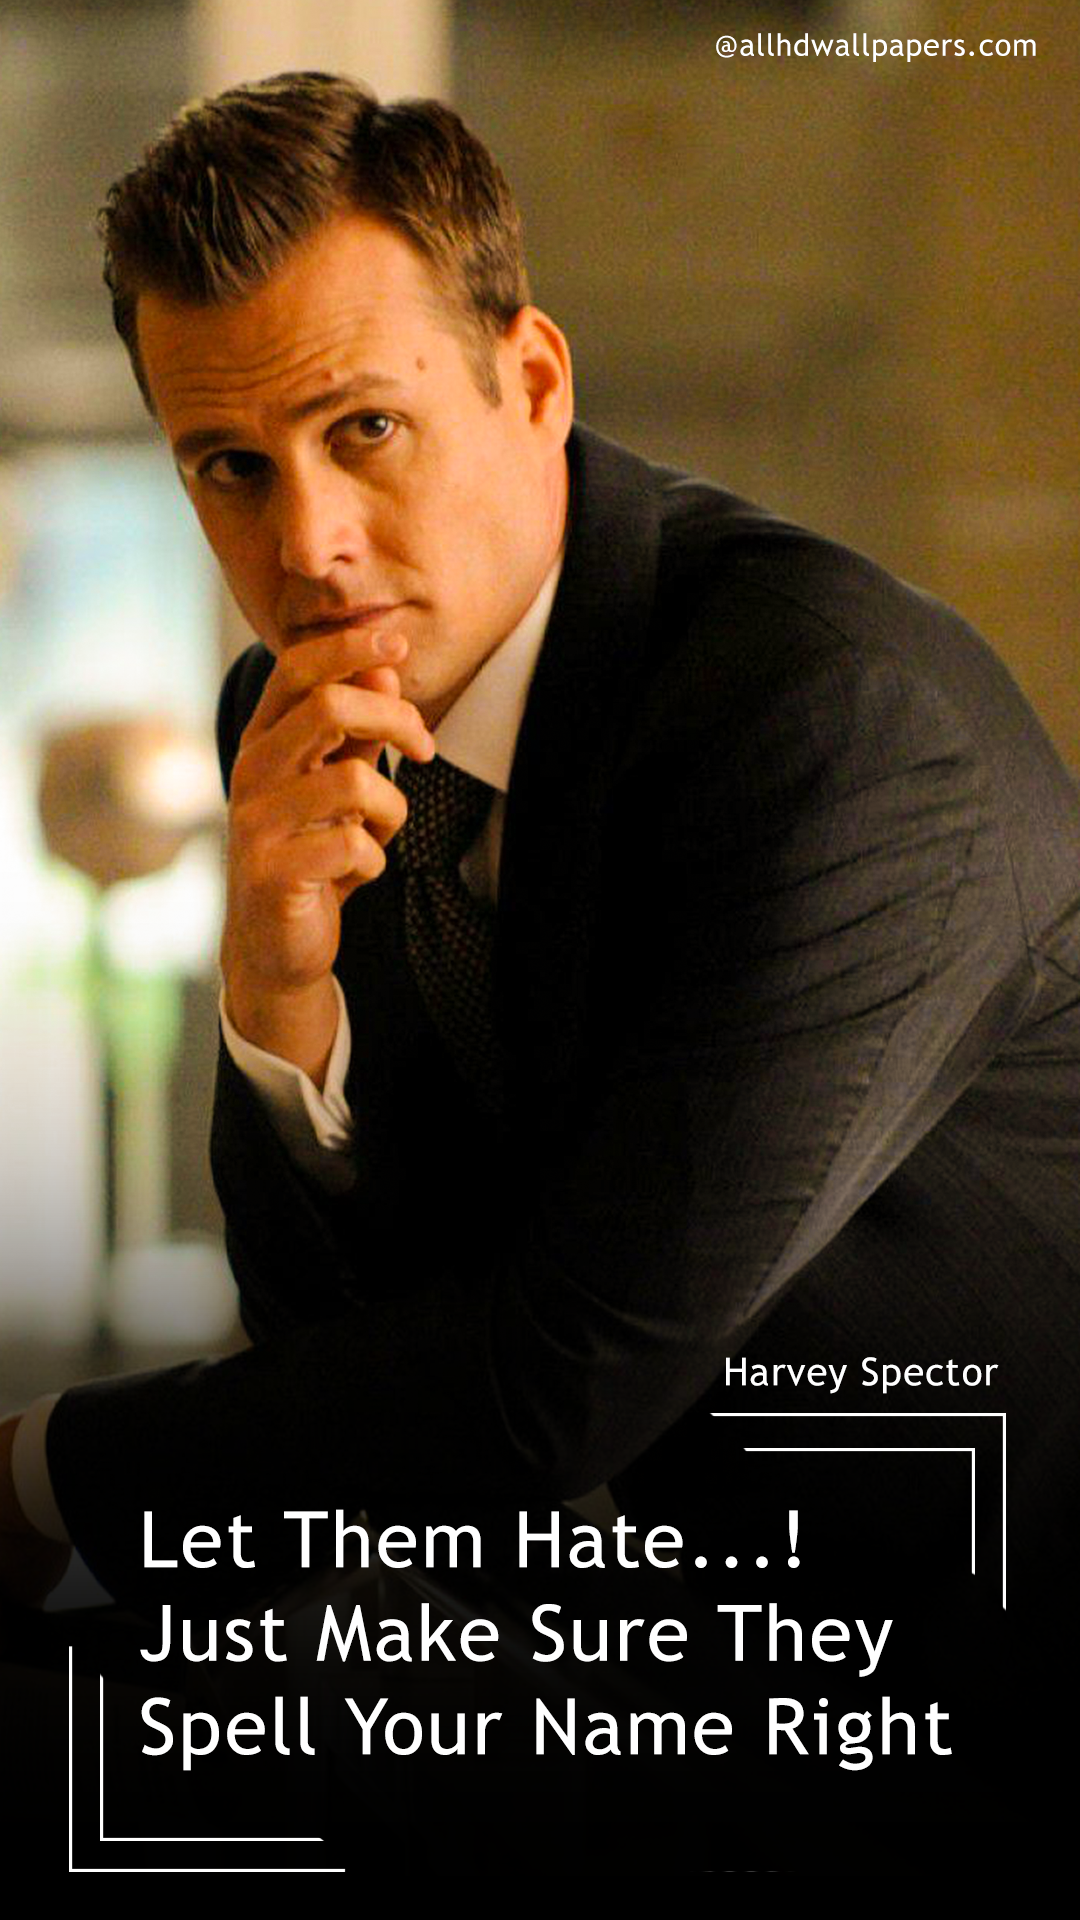 Harvey Specter Wallpapers - Gabriel Macht Season 2 - HD Wallpaper 